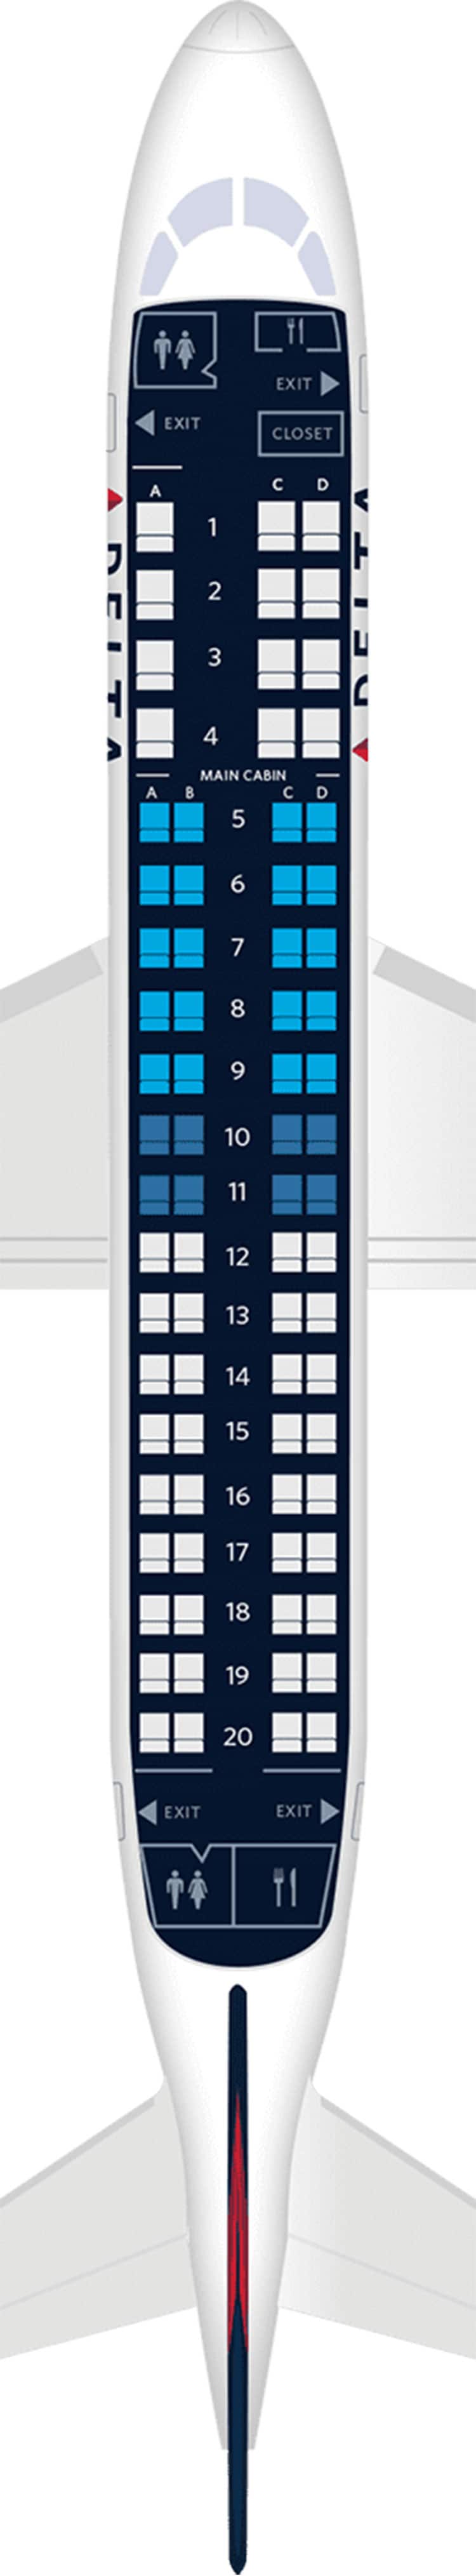 安博威195客机座位图图片